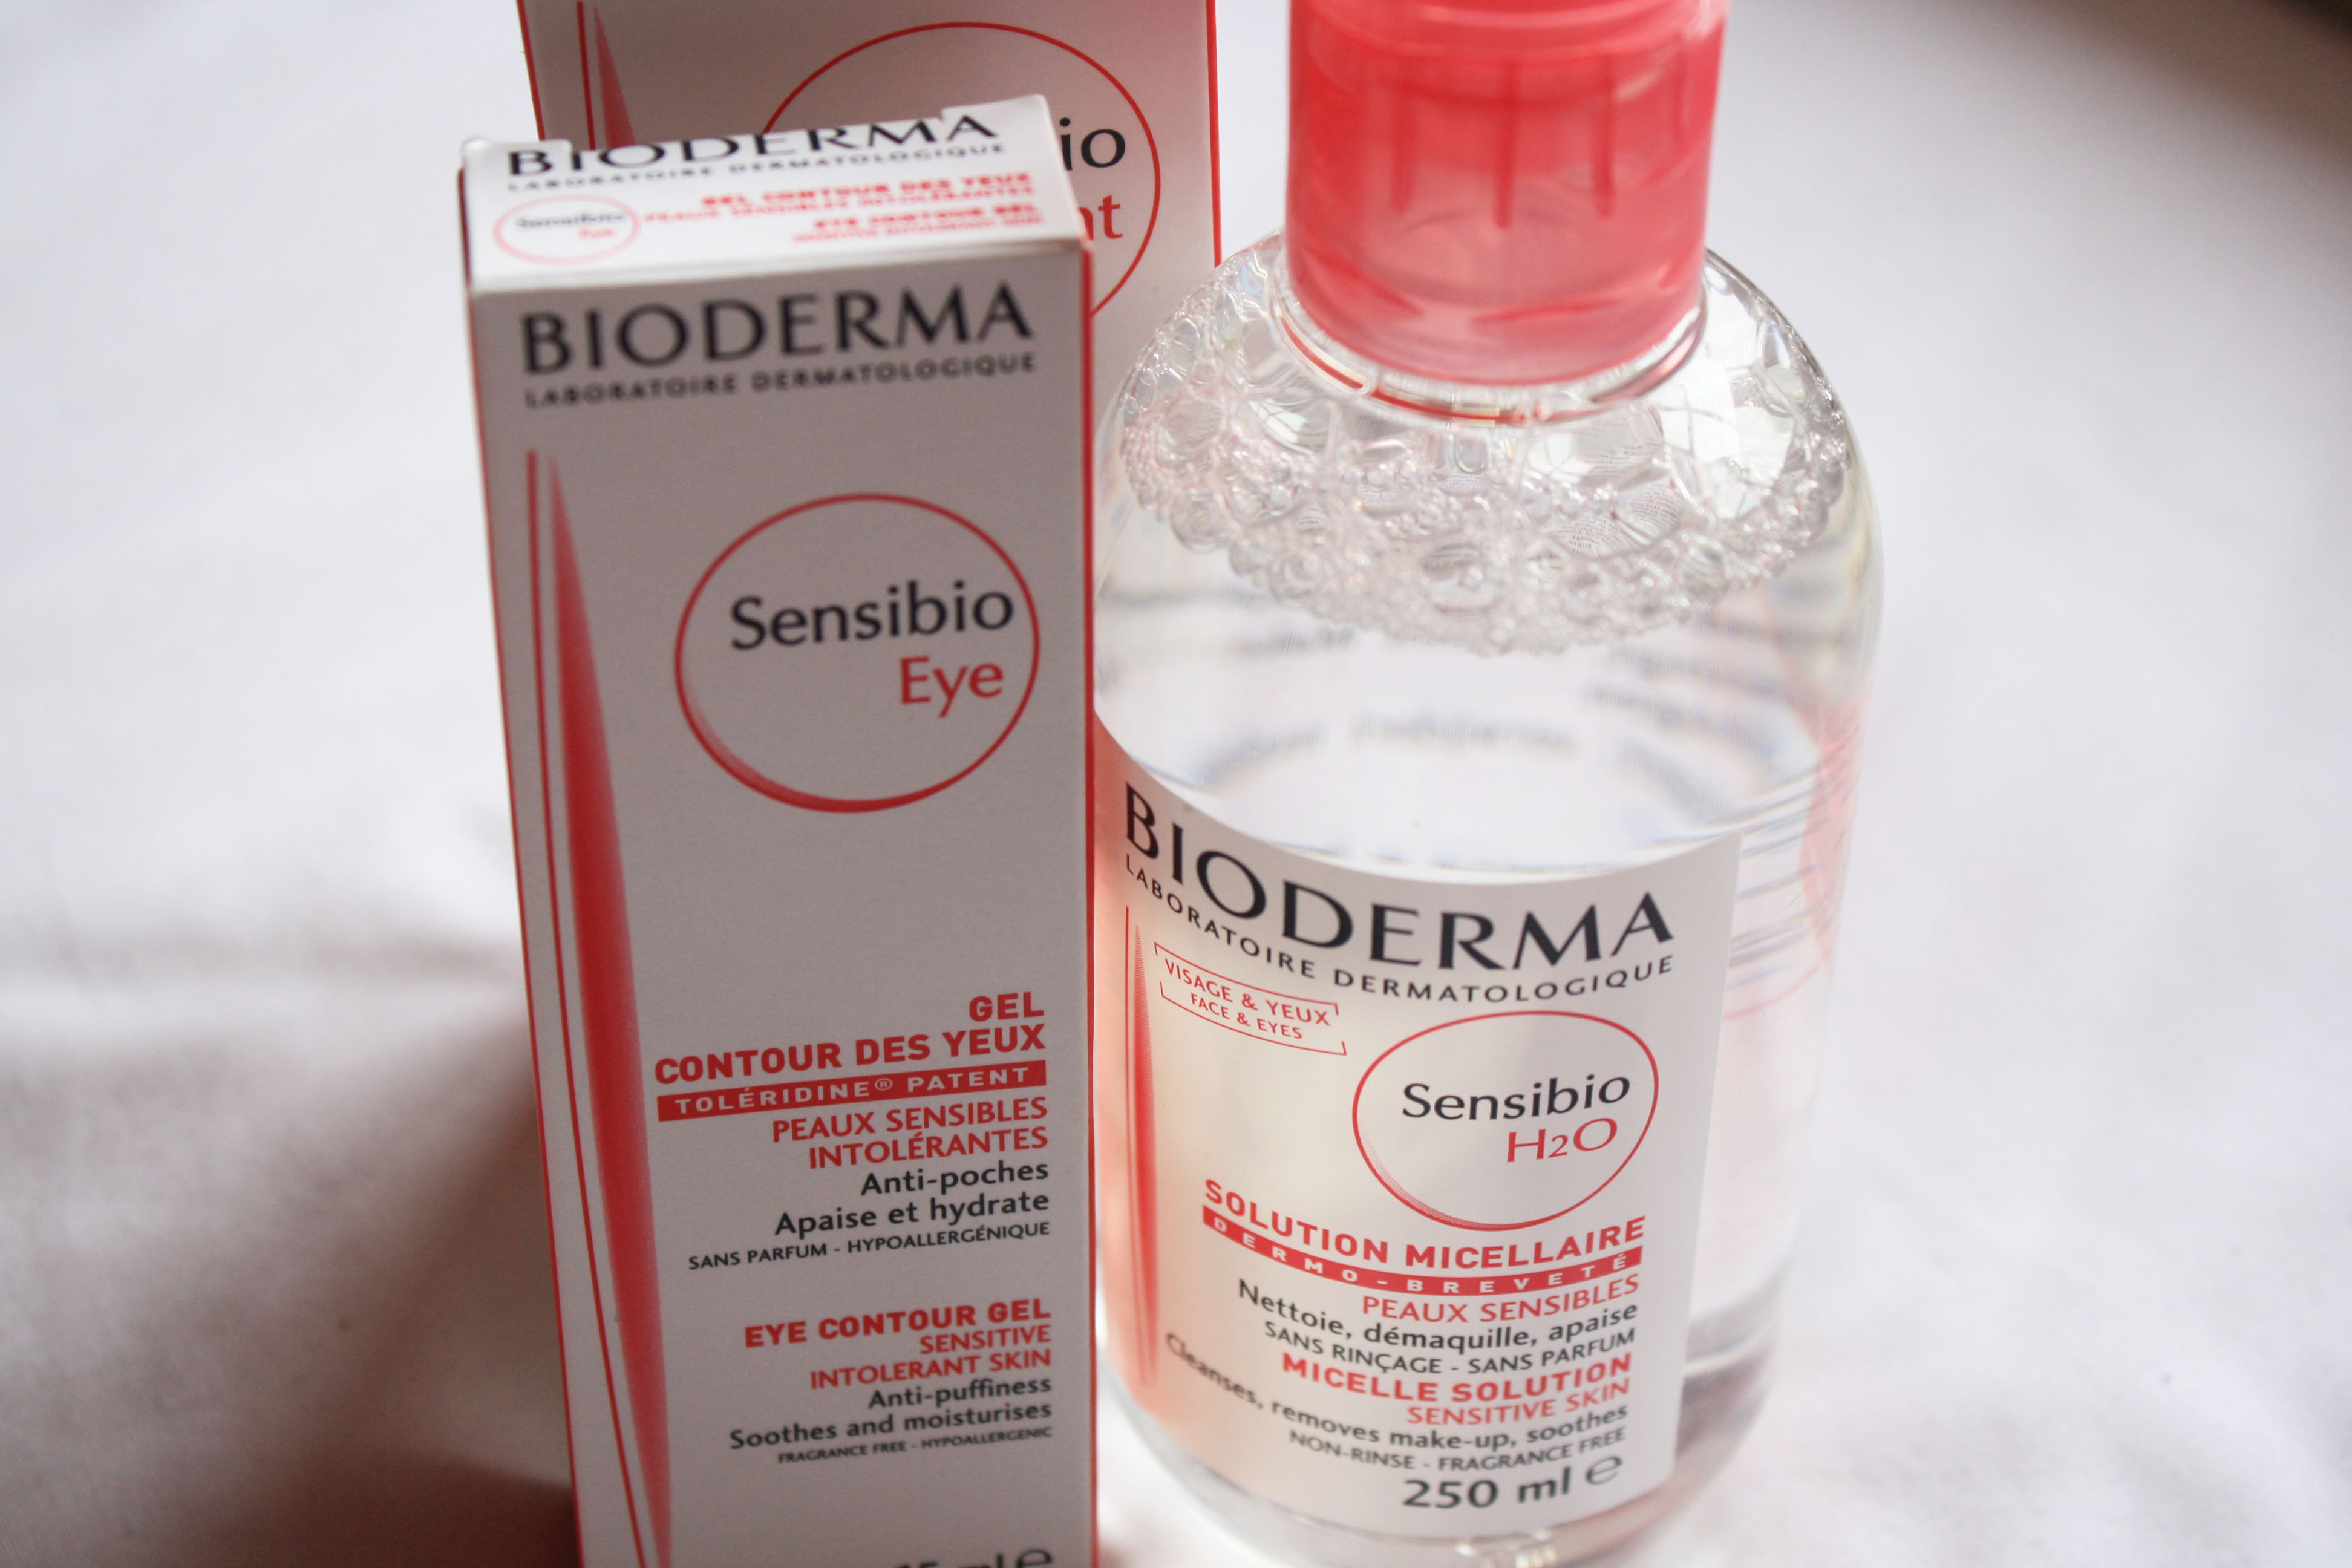 Bioderma sensibio ar цены. Биодерма Сенсибио гель для умывания. Биодерма Сенсибио 50 +. Bioderma Sensibio SPF 50. Биодерма Сенсибио аптека.